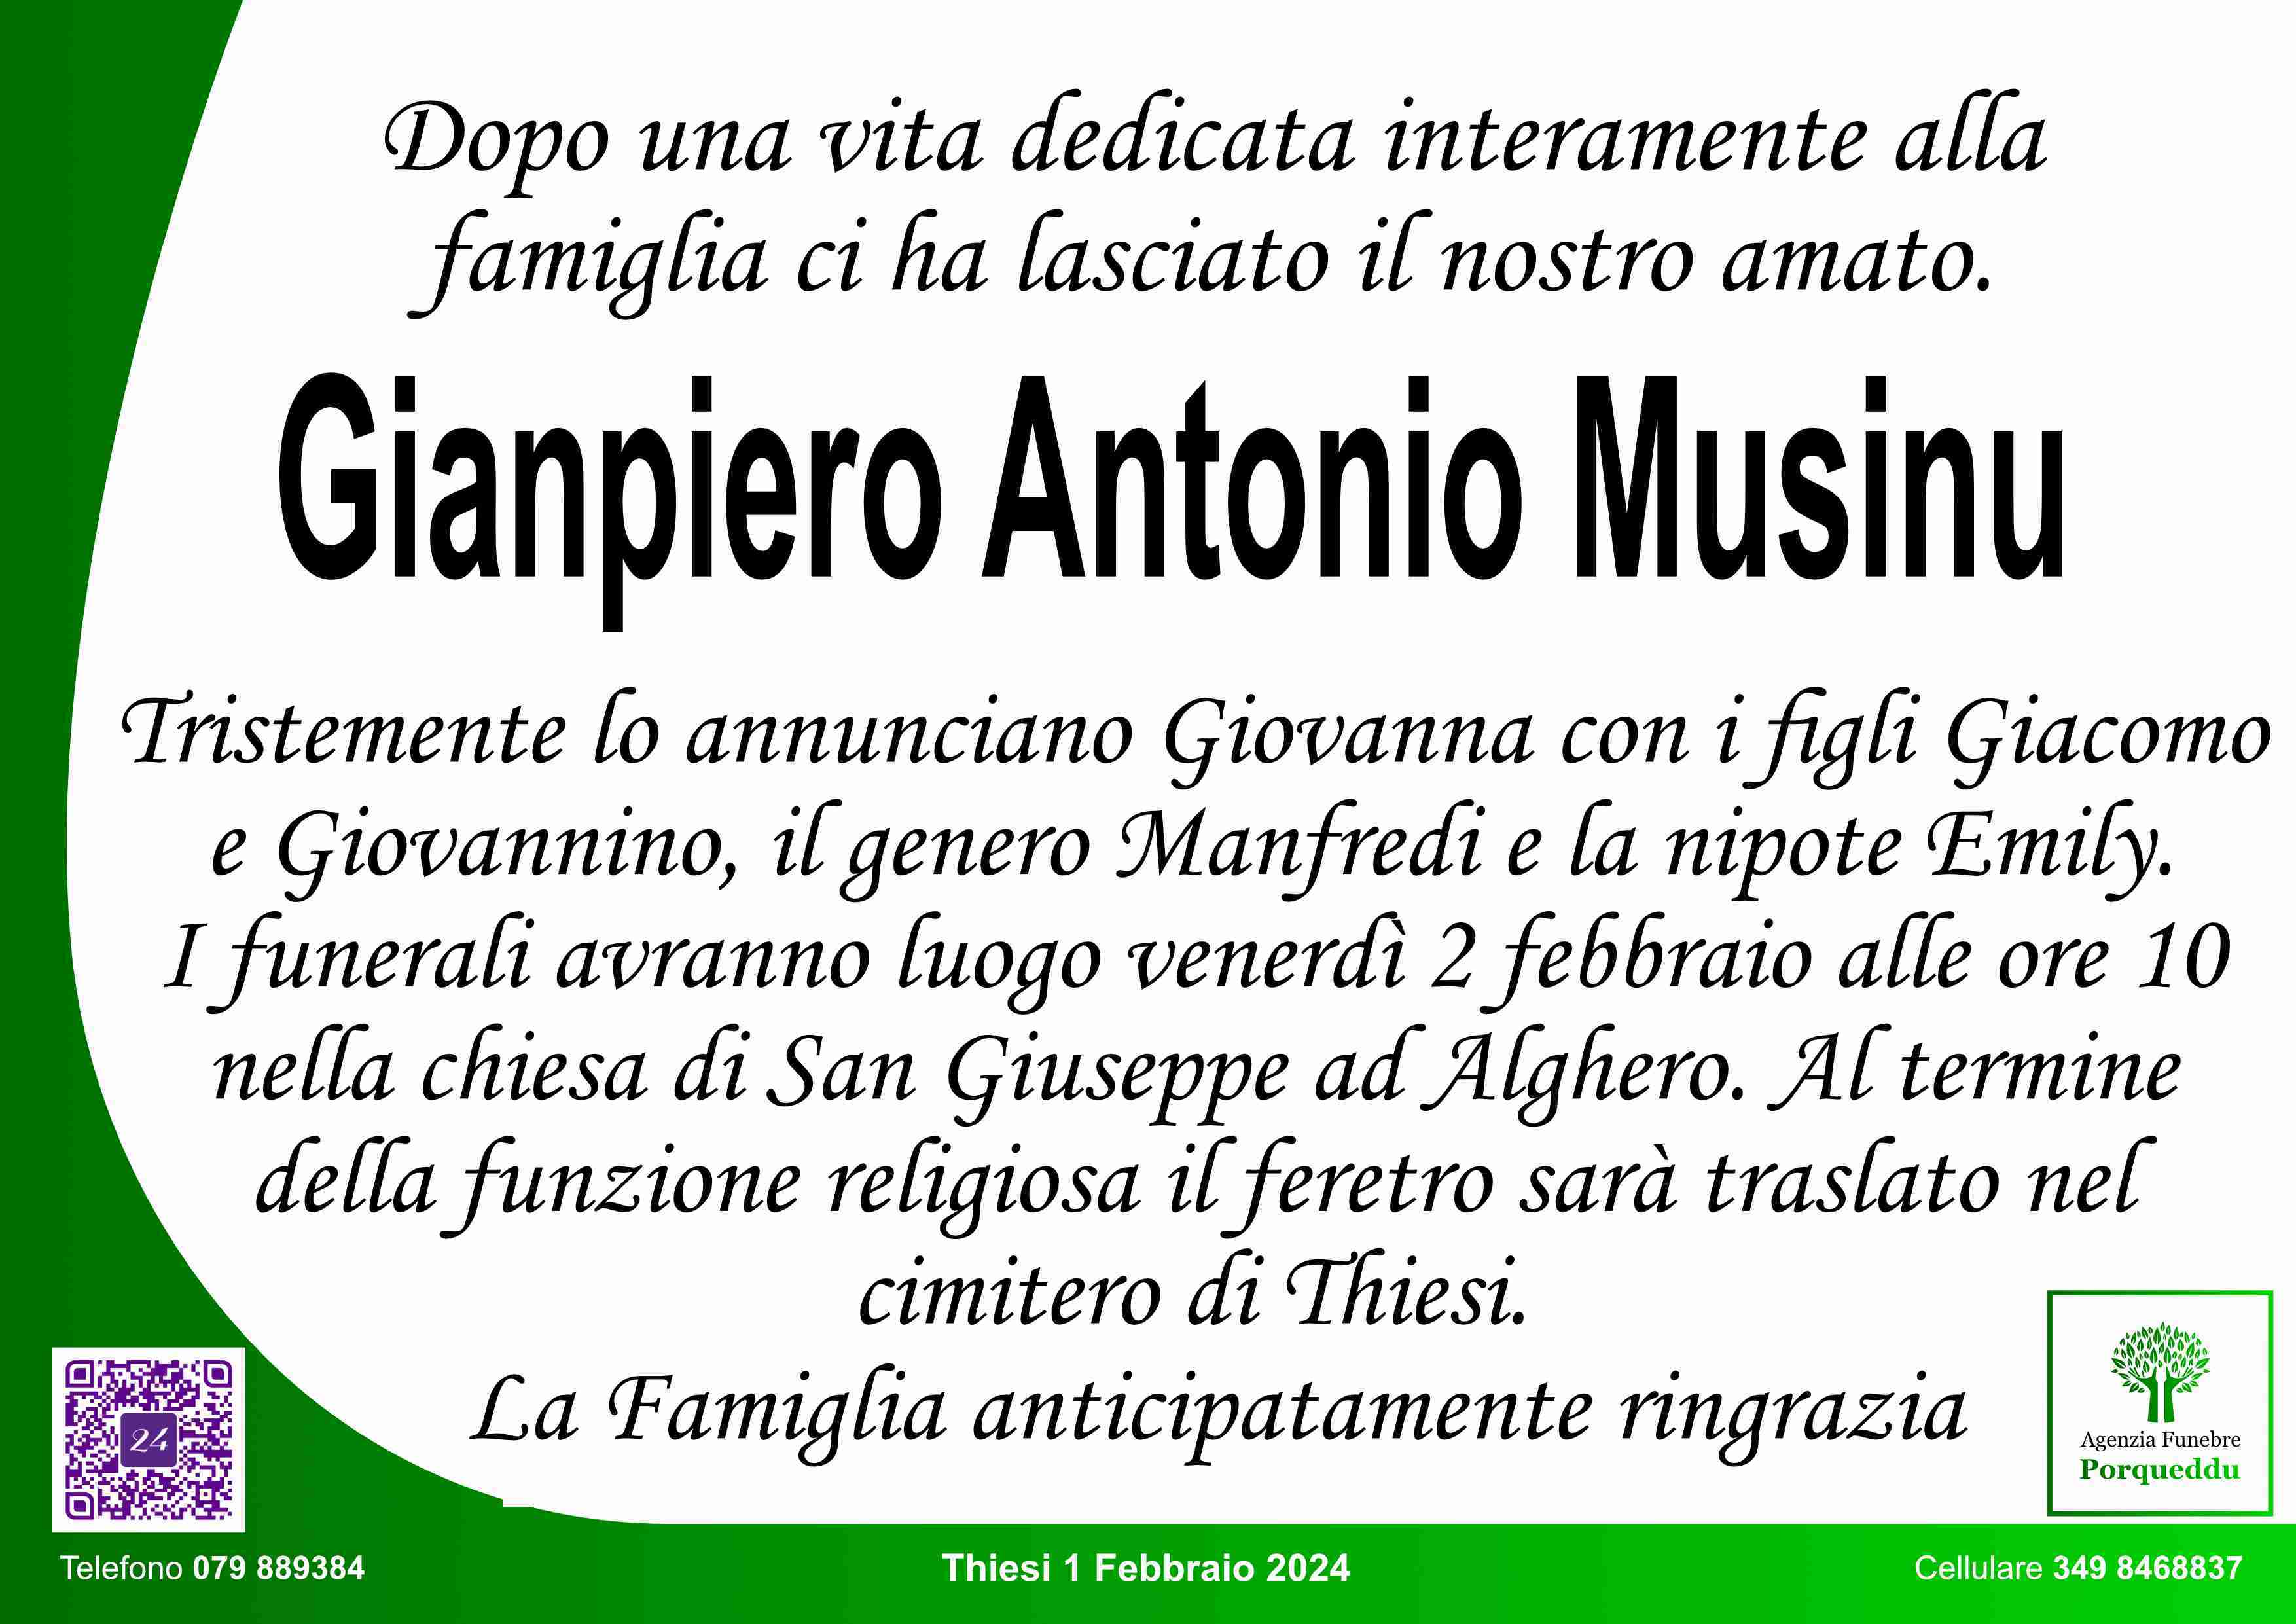 Gianpiero Antonio Musinu